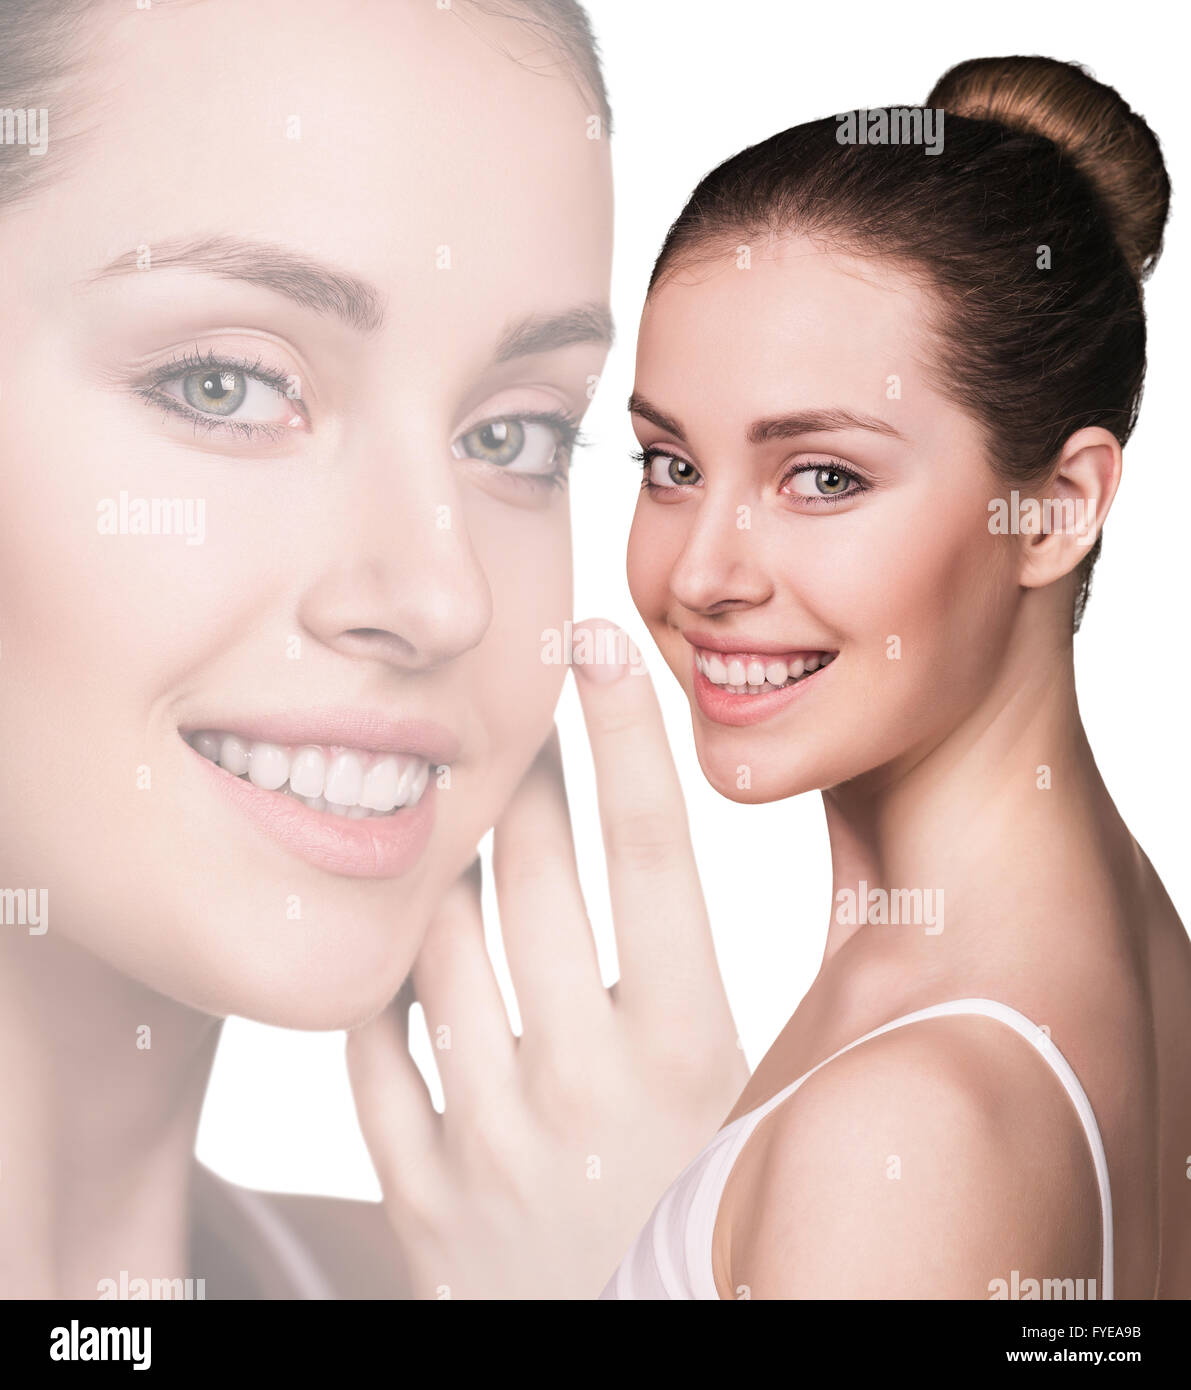 Fresh Beautiful Woman Face Stock Photo Alamy